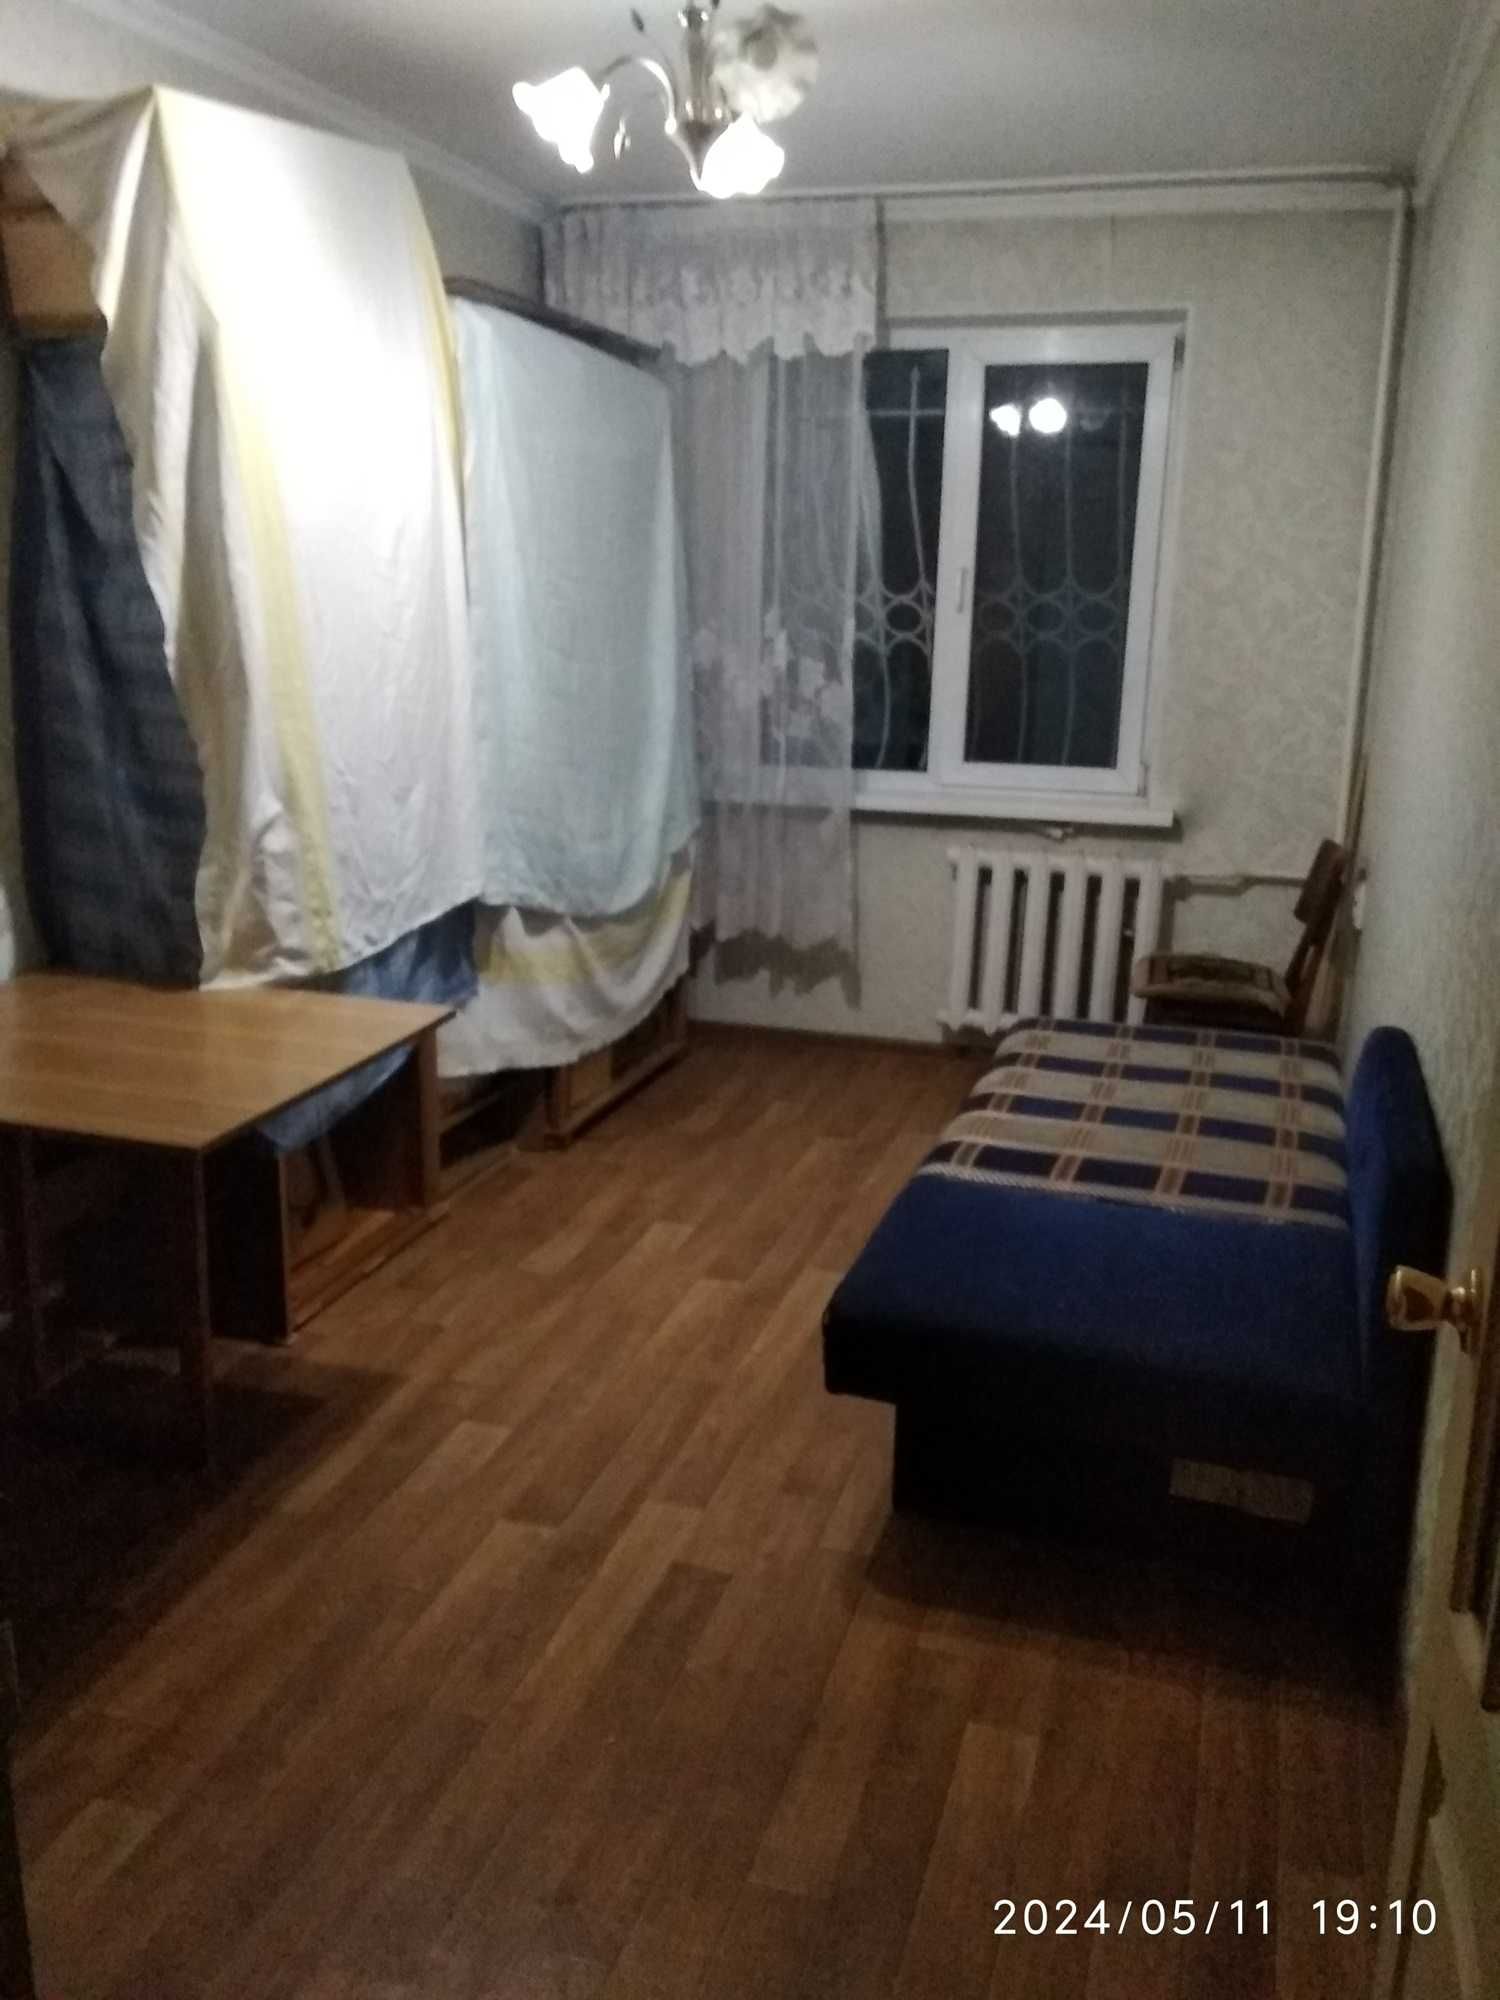 Продам трехкомнатную квартиру в Ауэзовском районе.